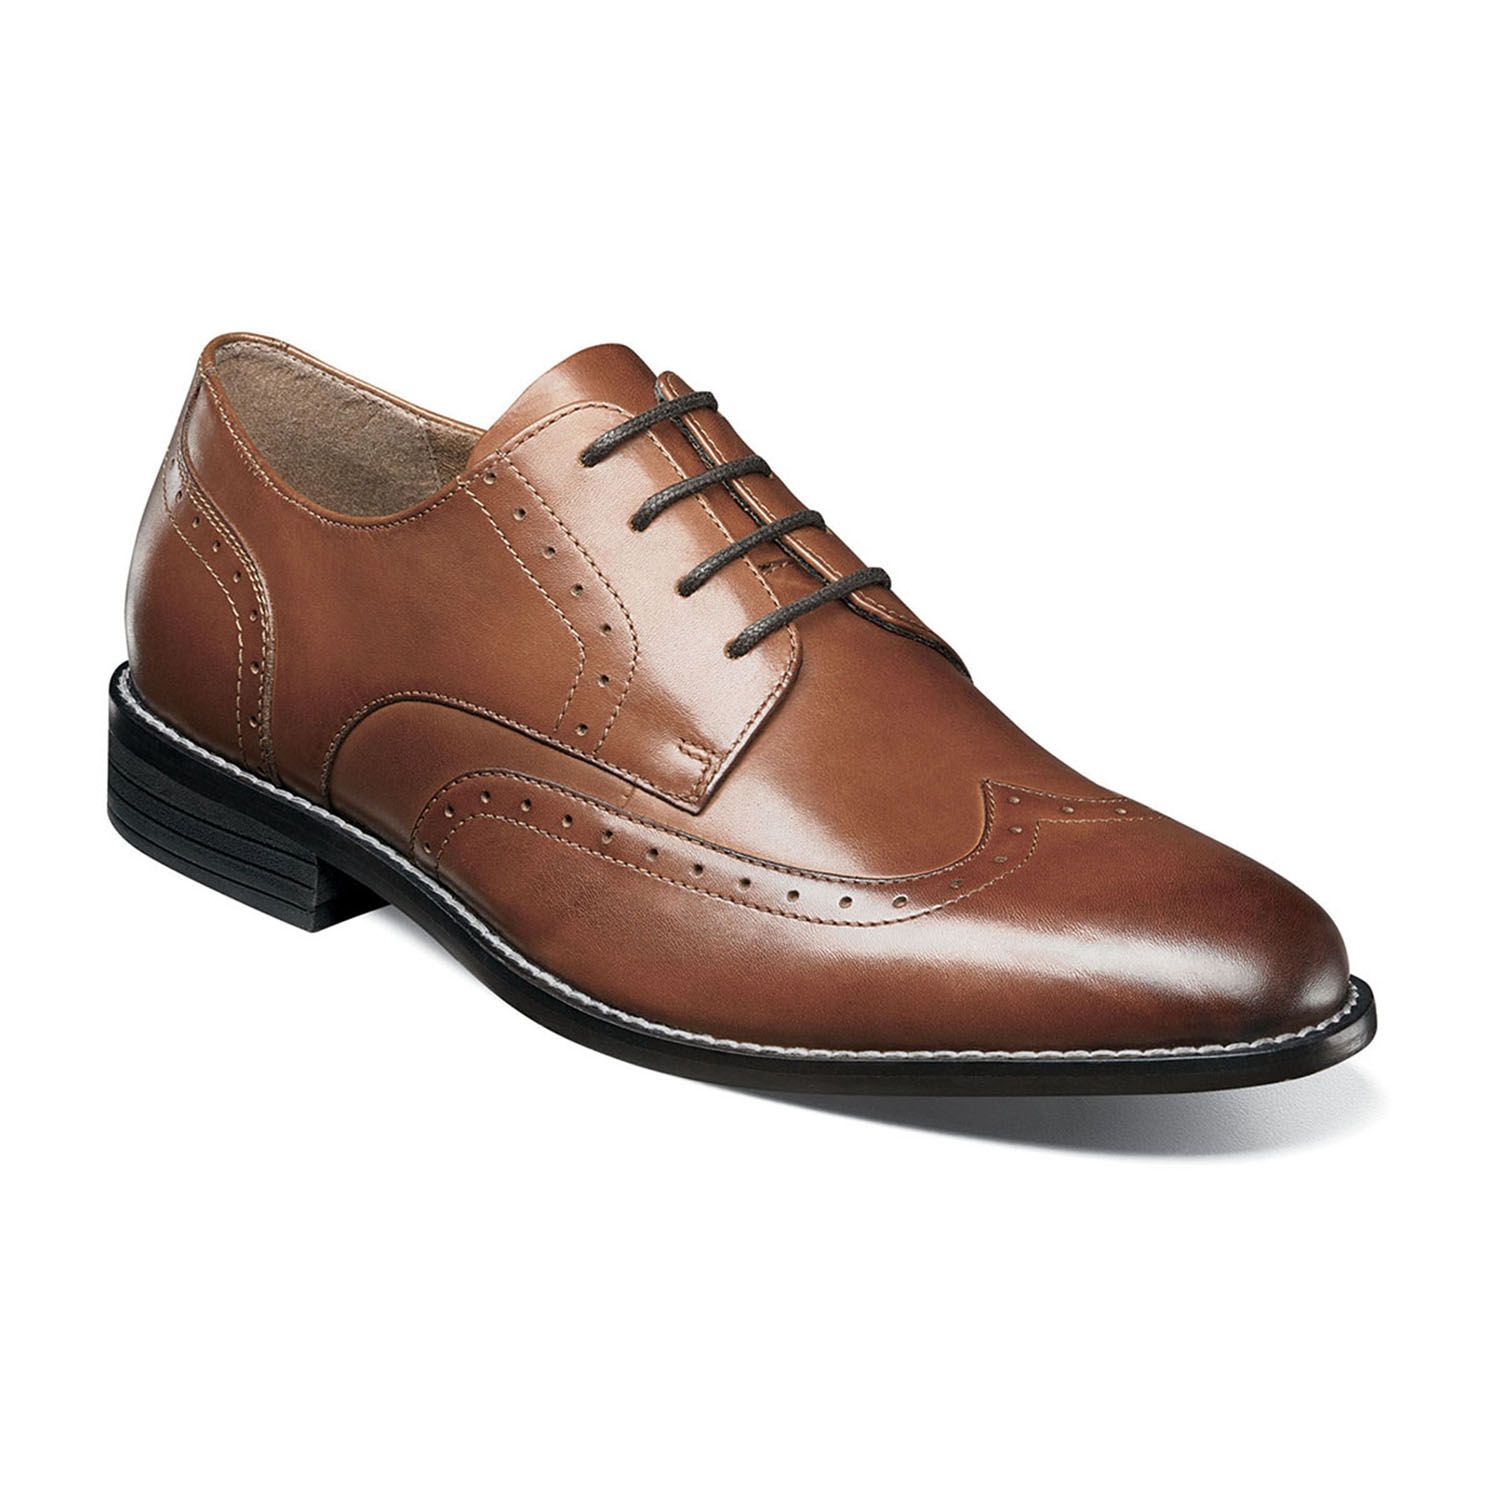 men's wingtip oxford dress shoes